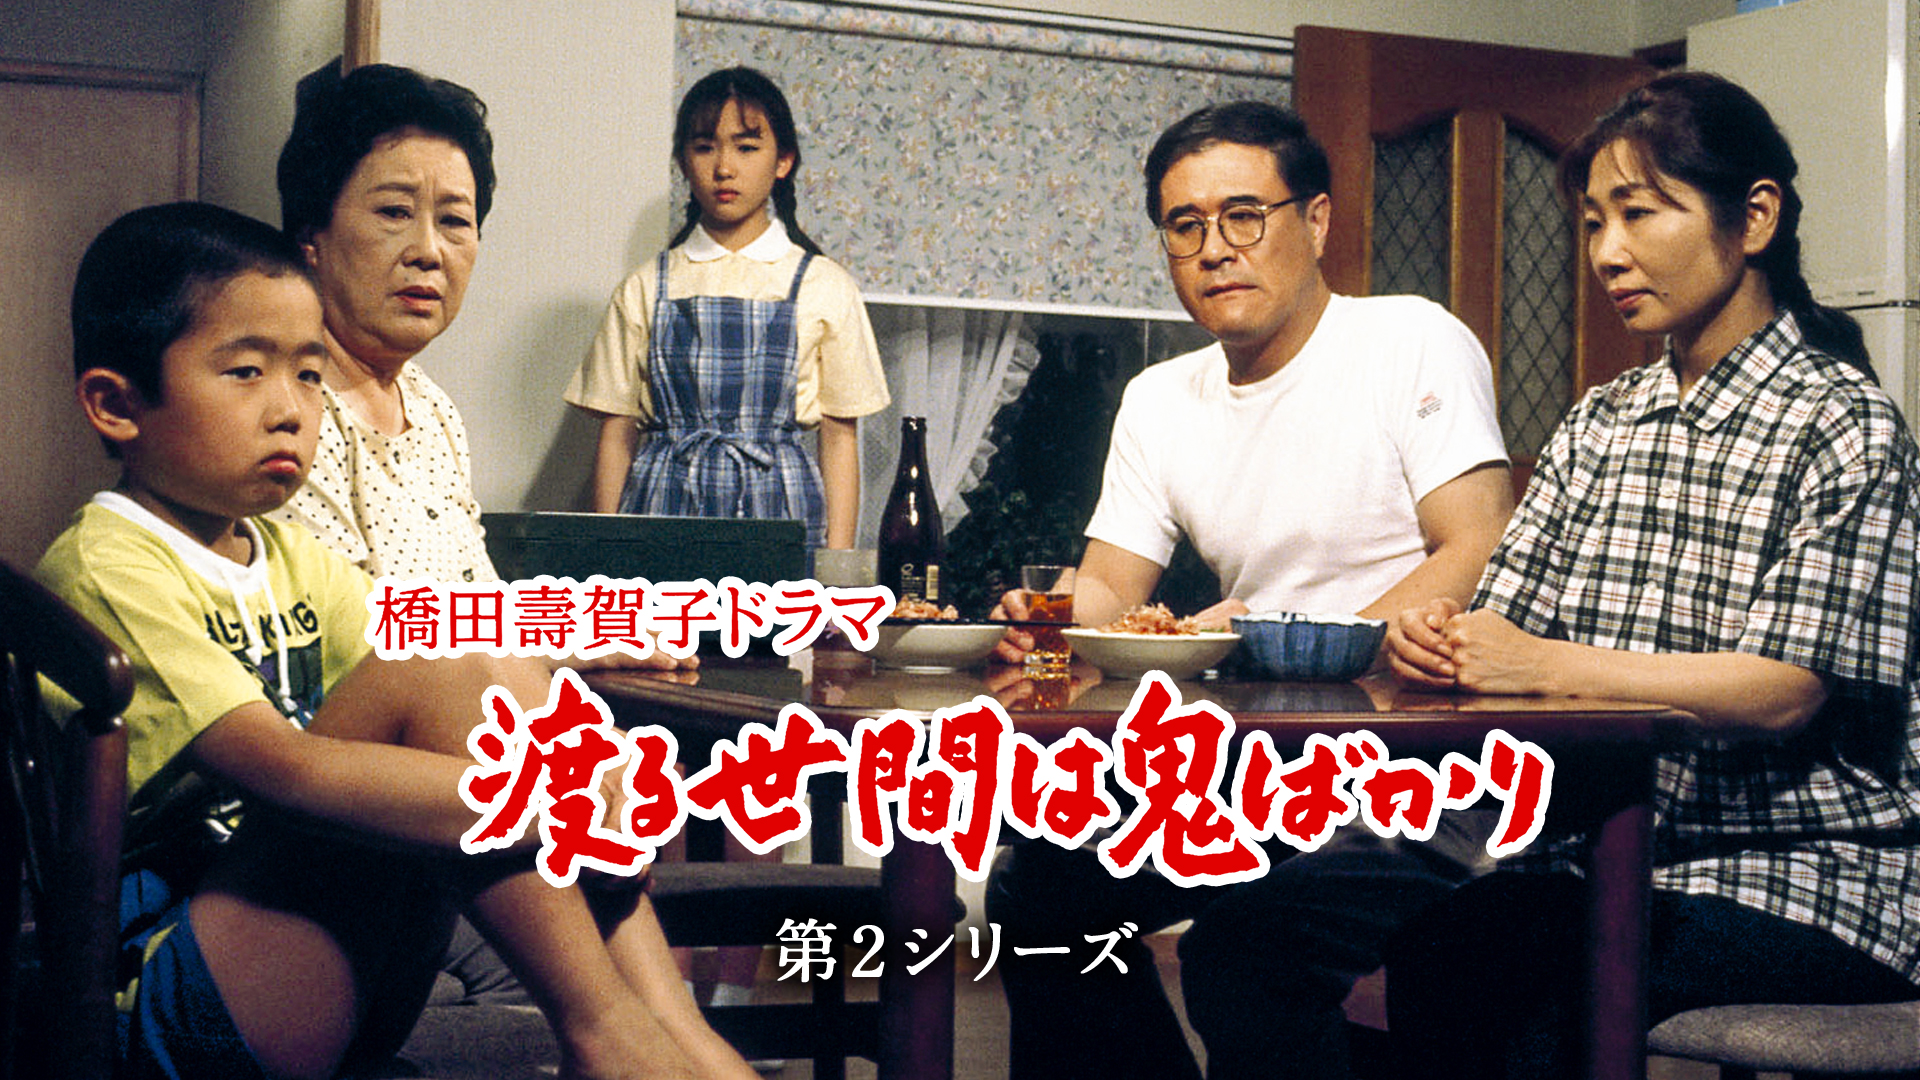 渡る世間は鬼ばかり 第2シリーズ(橋田壽賀子ドラマ)(国内ドラマ / 1993 